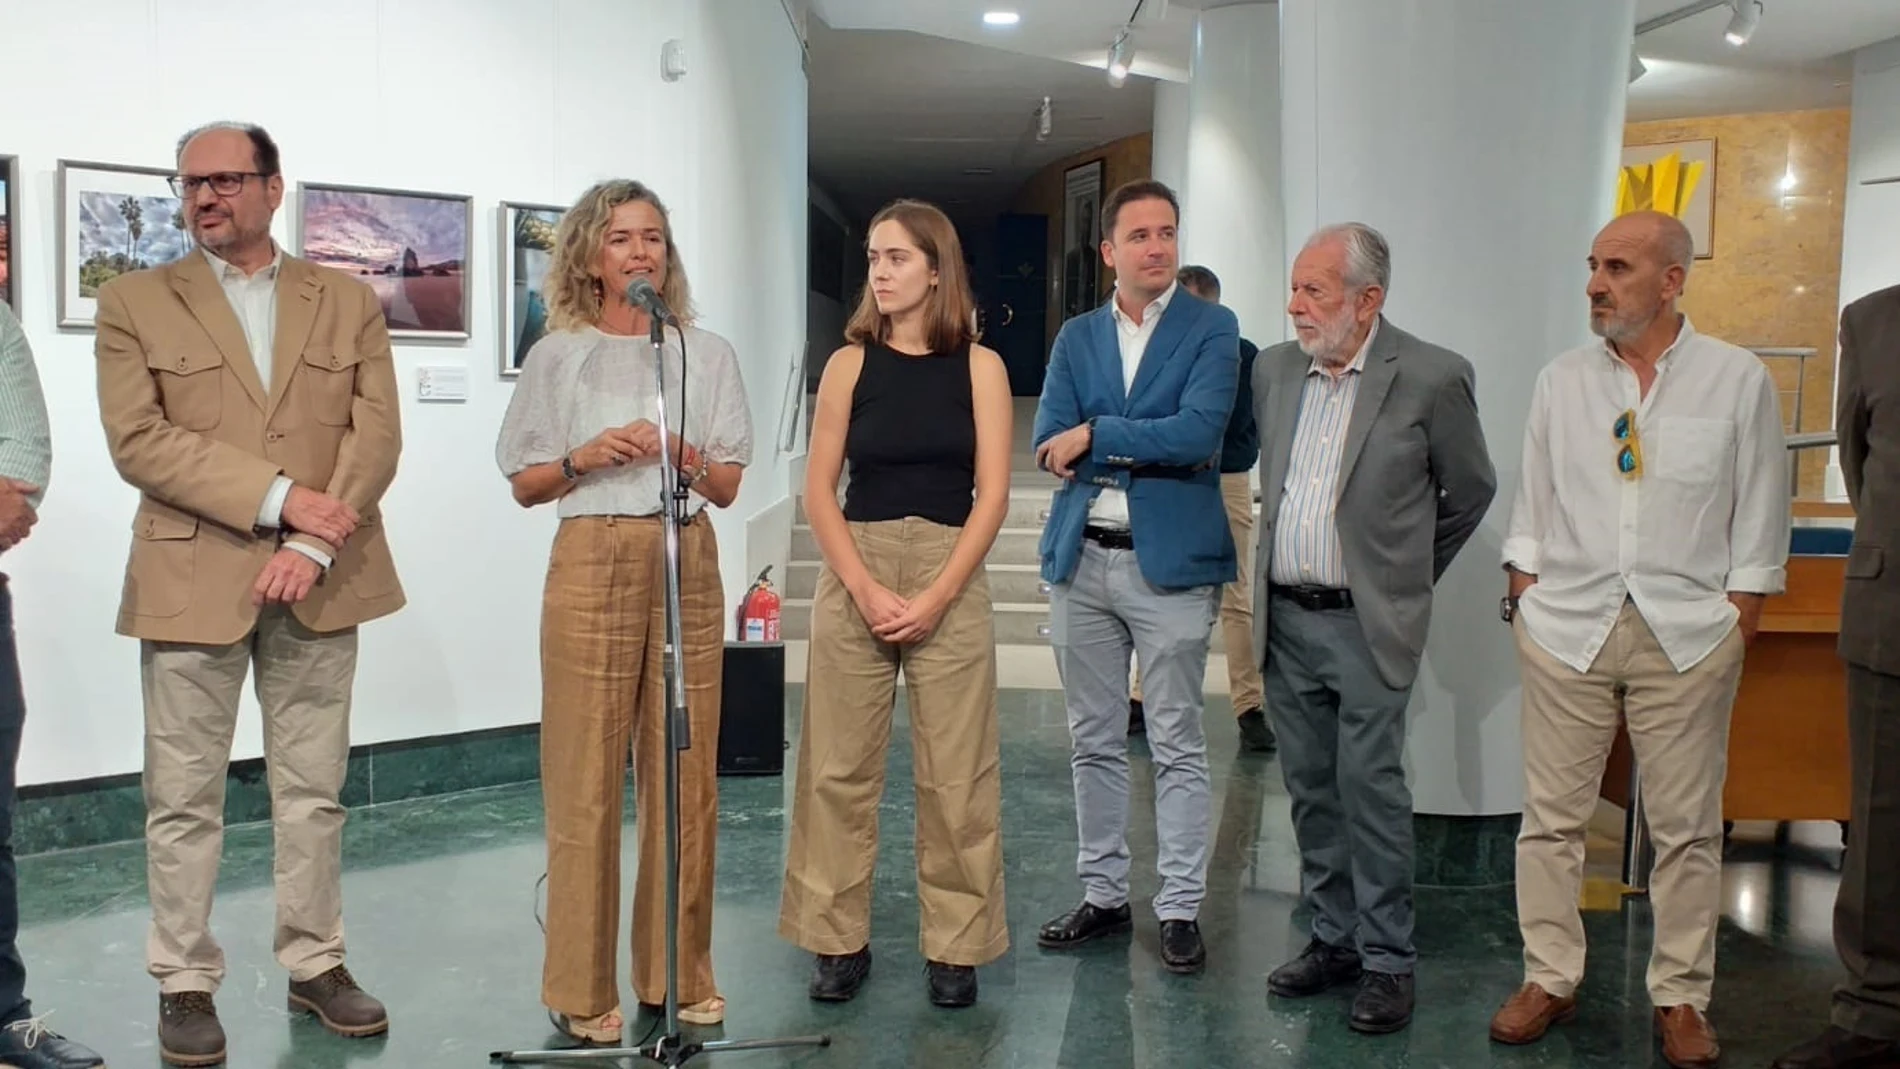 Presentación de la exposición "Patrimonio de Huelva y Provincia" 